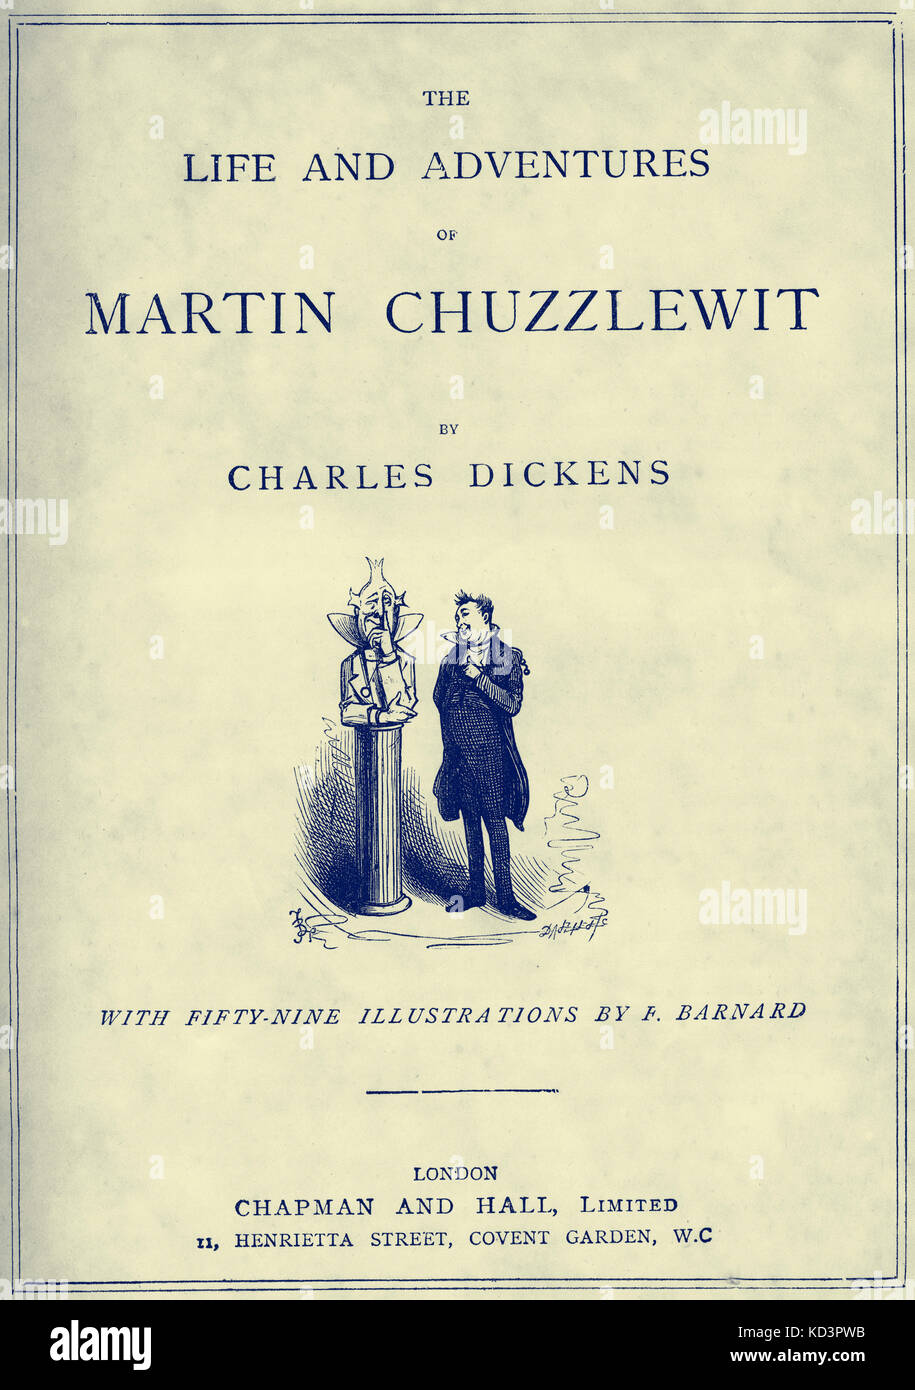 The Life & Adventures of Martin Chuzzlewitt di Charles Dickens pagina del titolo - romanziere inglese, 7 febbraio 1812 - 9 giugno 1870. Illustrazione di Frederick (Fred) Barnard . Londra . Chapman e Hall. Foto Stock